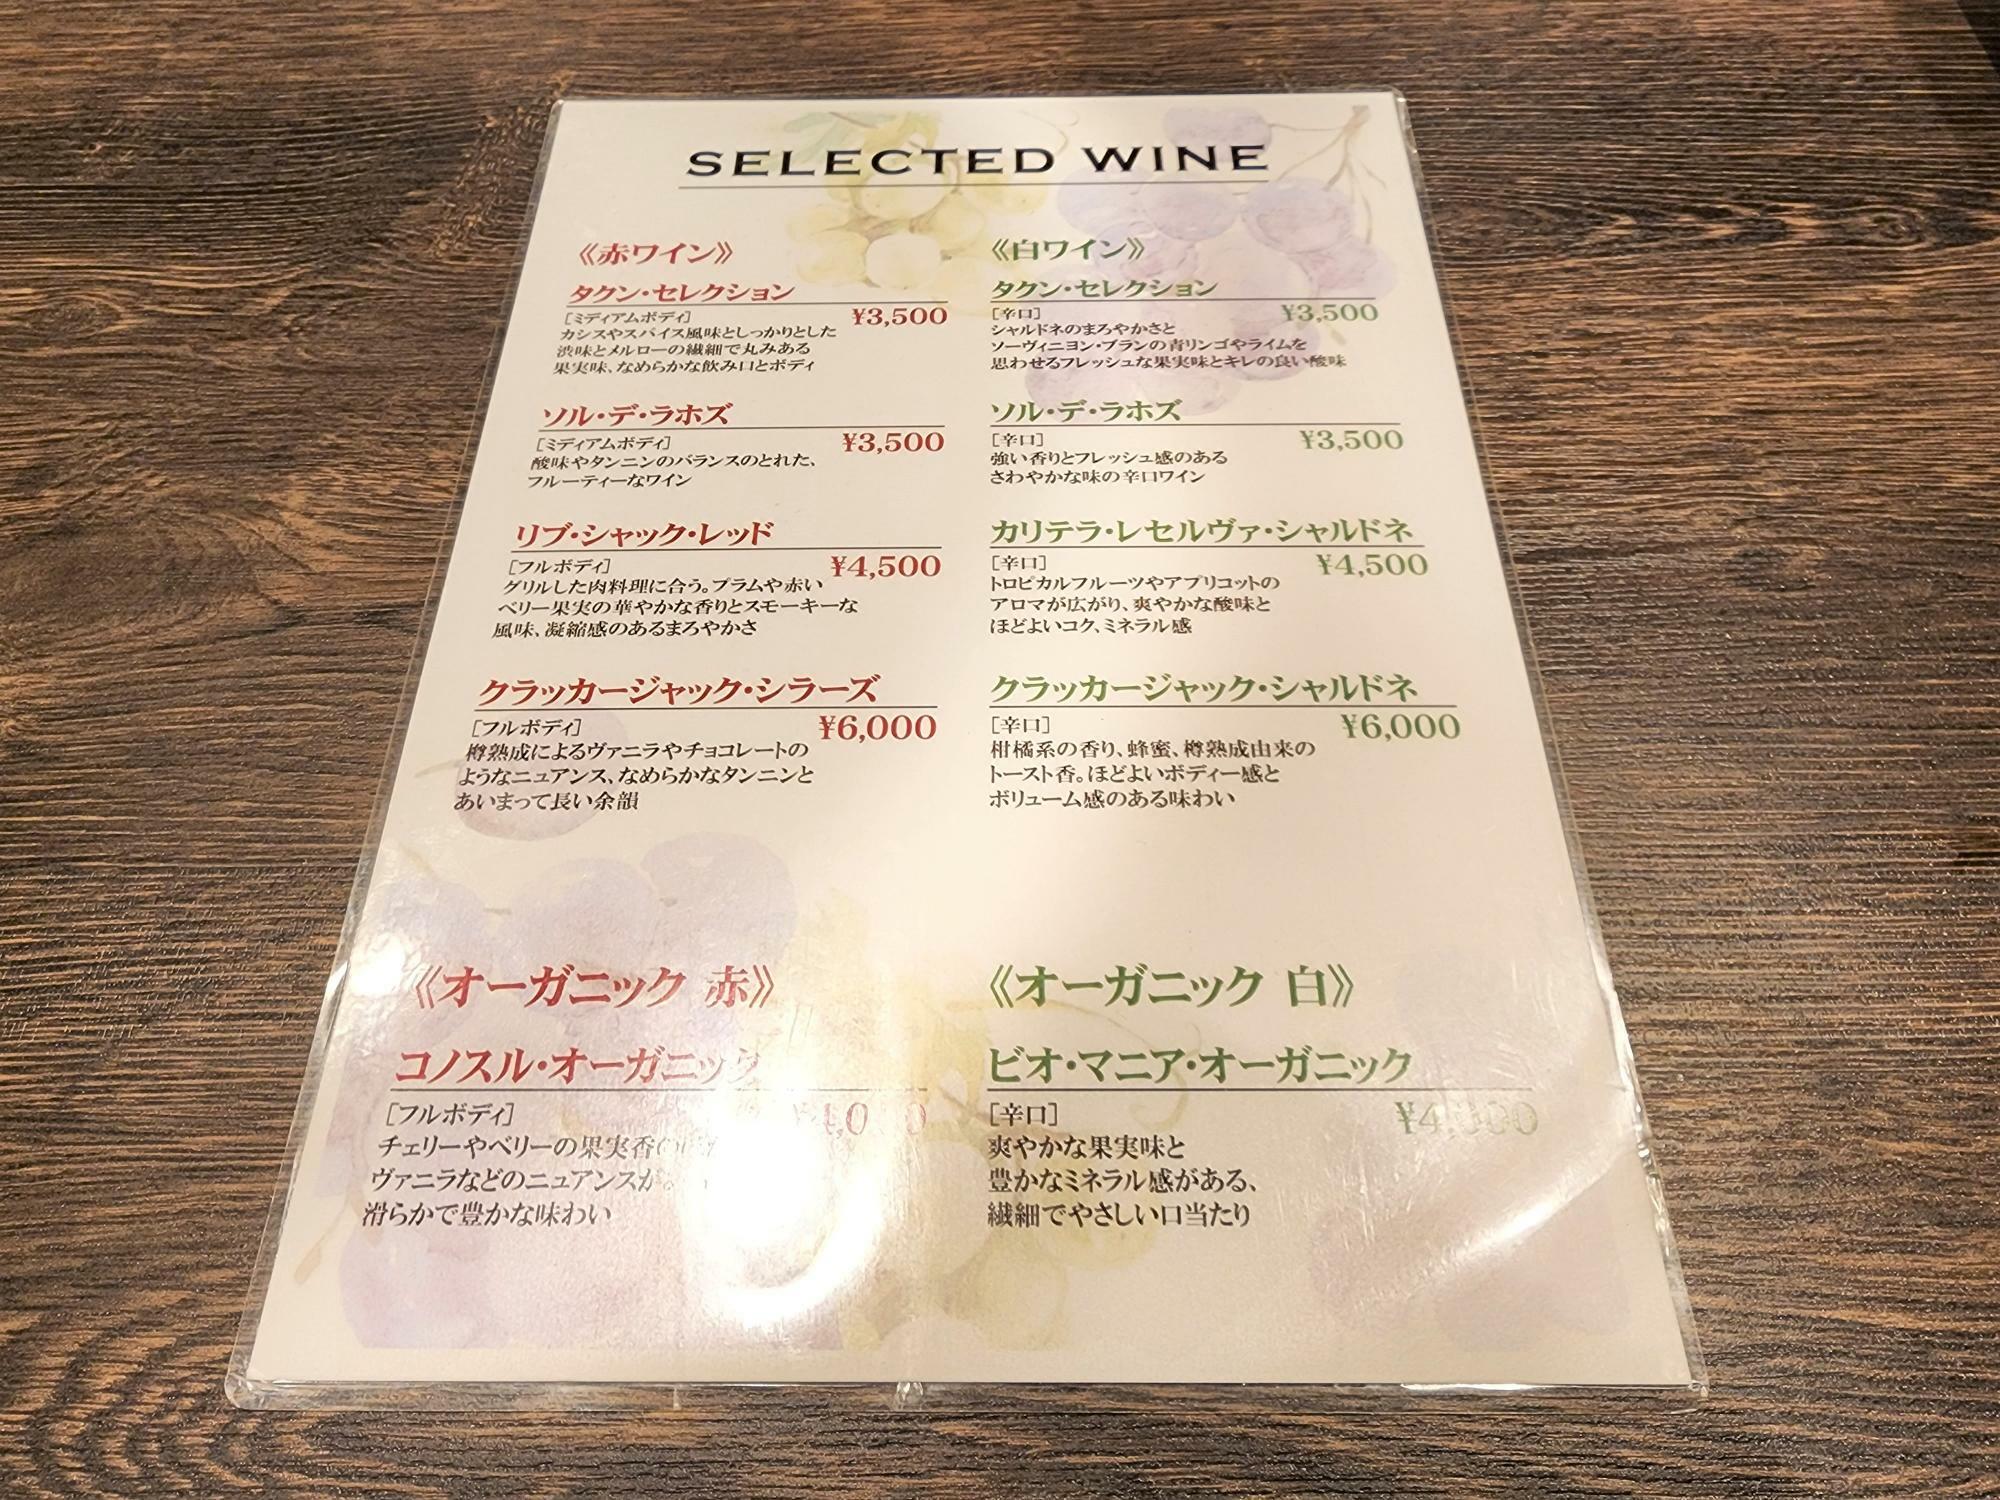 スタッフの方が羊肉に合うワインを厳選したというワインリスト。